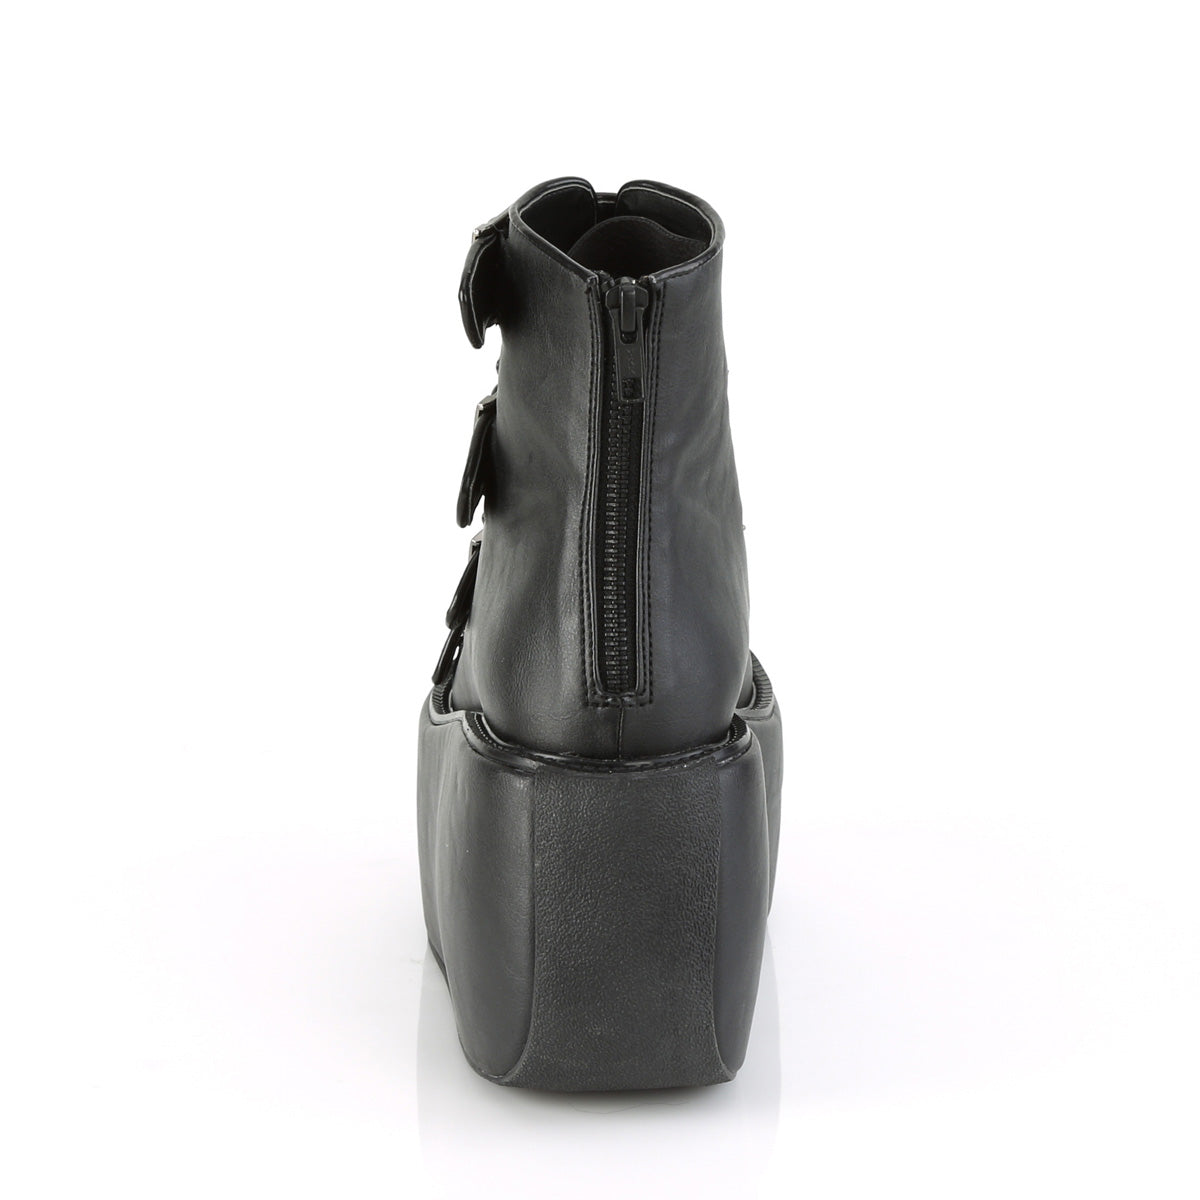 VIOLET-150 Black Vegan Leather-Hologram Ankle Boot Demonia